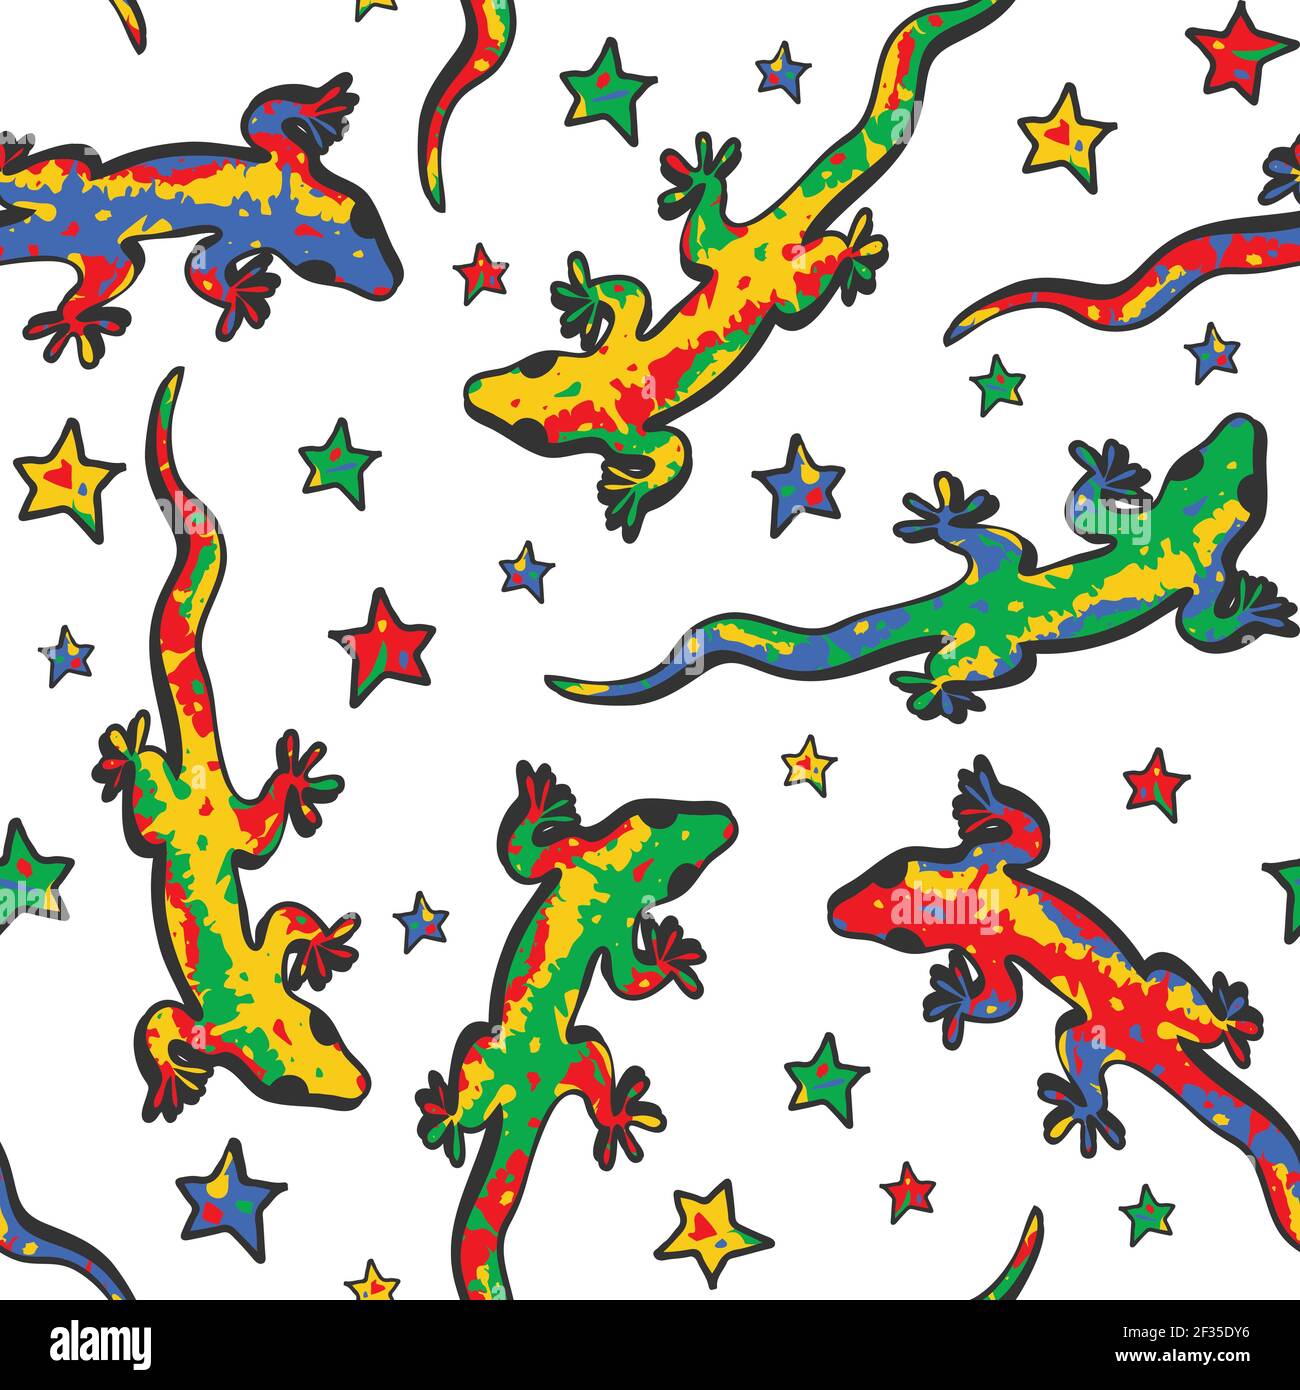 Nahtloses Vektormuster mit Eidechsen und Sternen auf weißem Hintergrund. Niedliche Tapete-Design mit bunten Geckos. Tiermode Textil. Stock Vektor